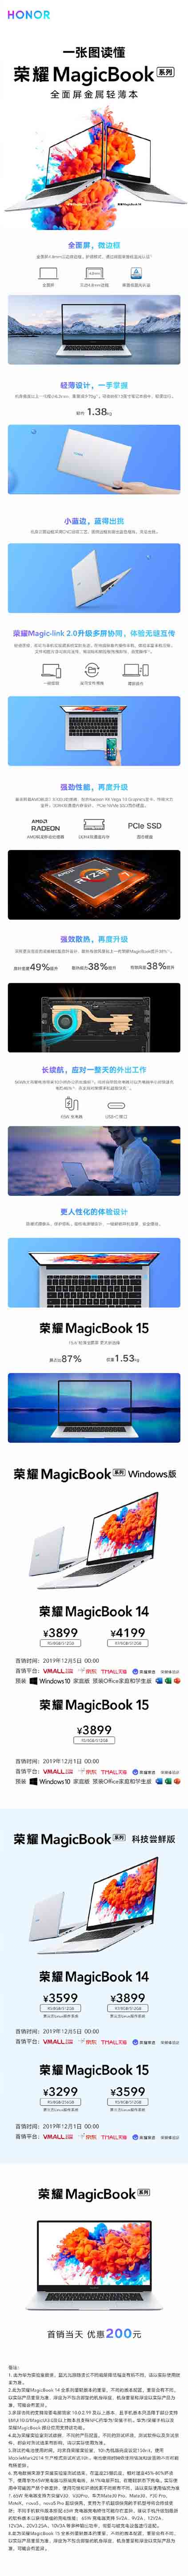 荣耀MagicBook14&15配置如何 一图了解新荣耀MagicBook系列全性能